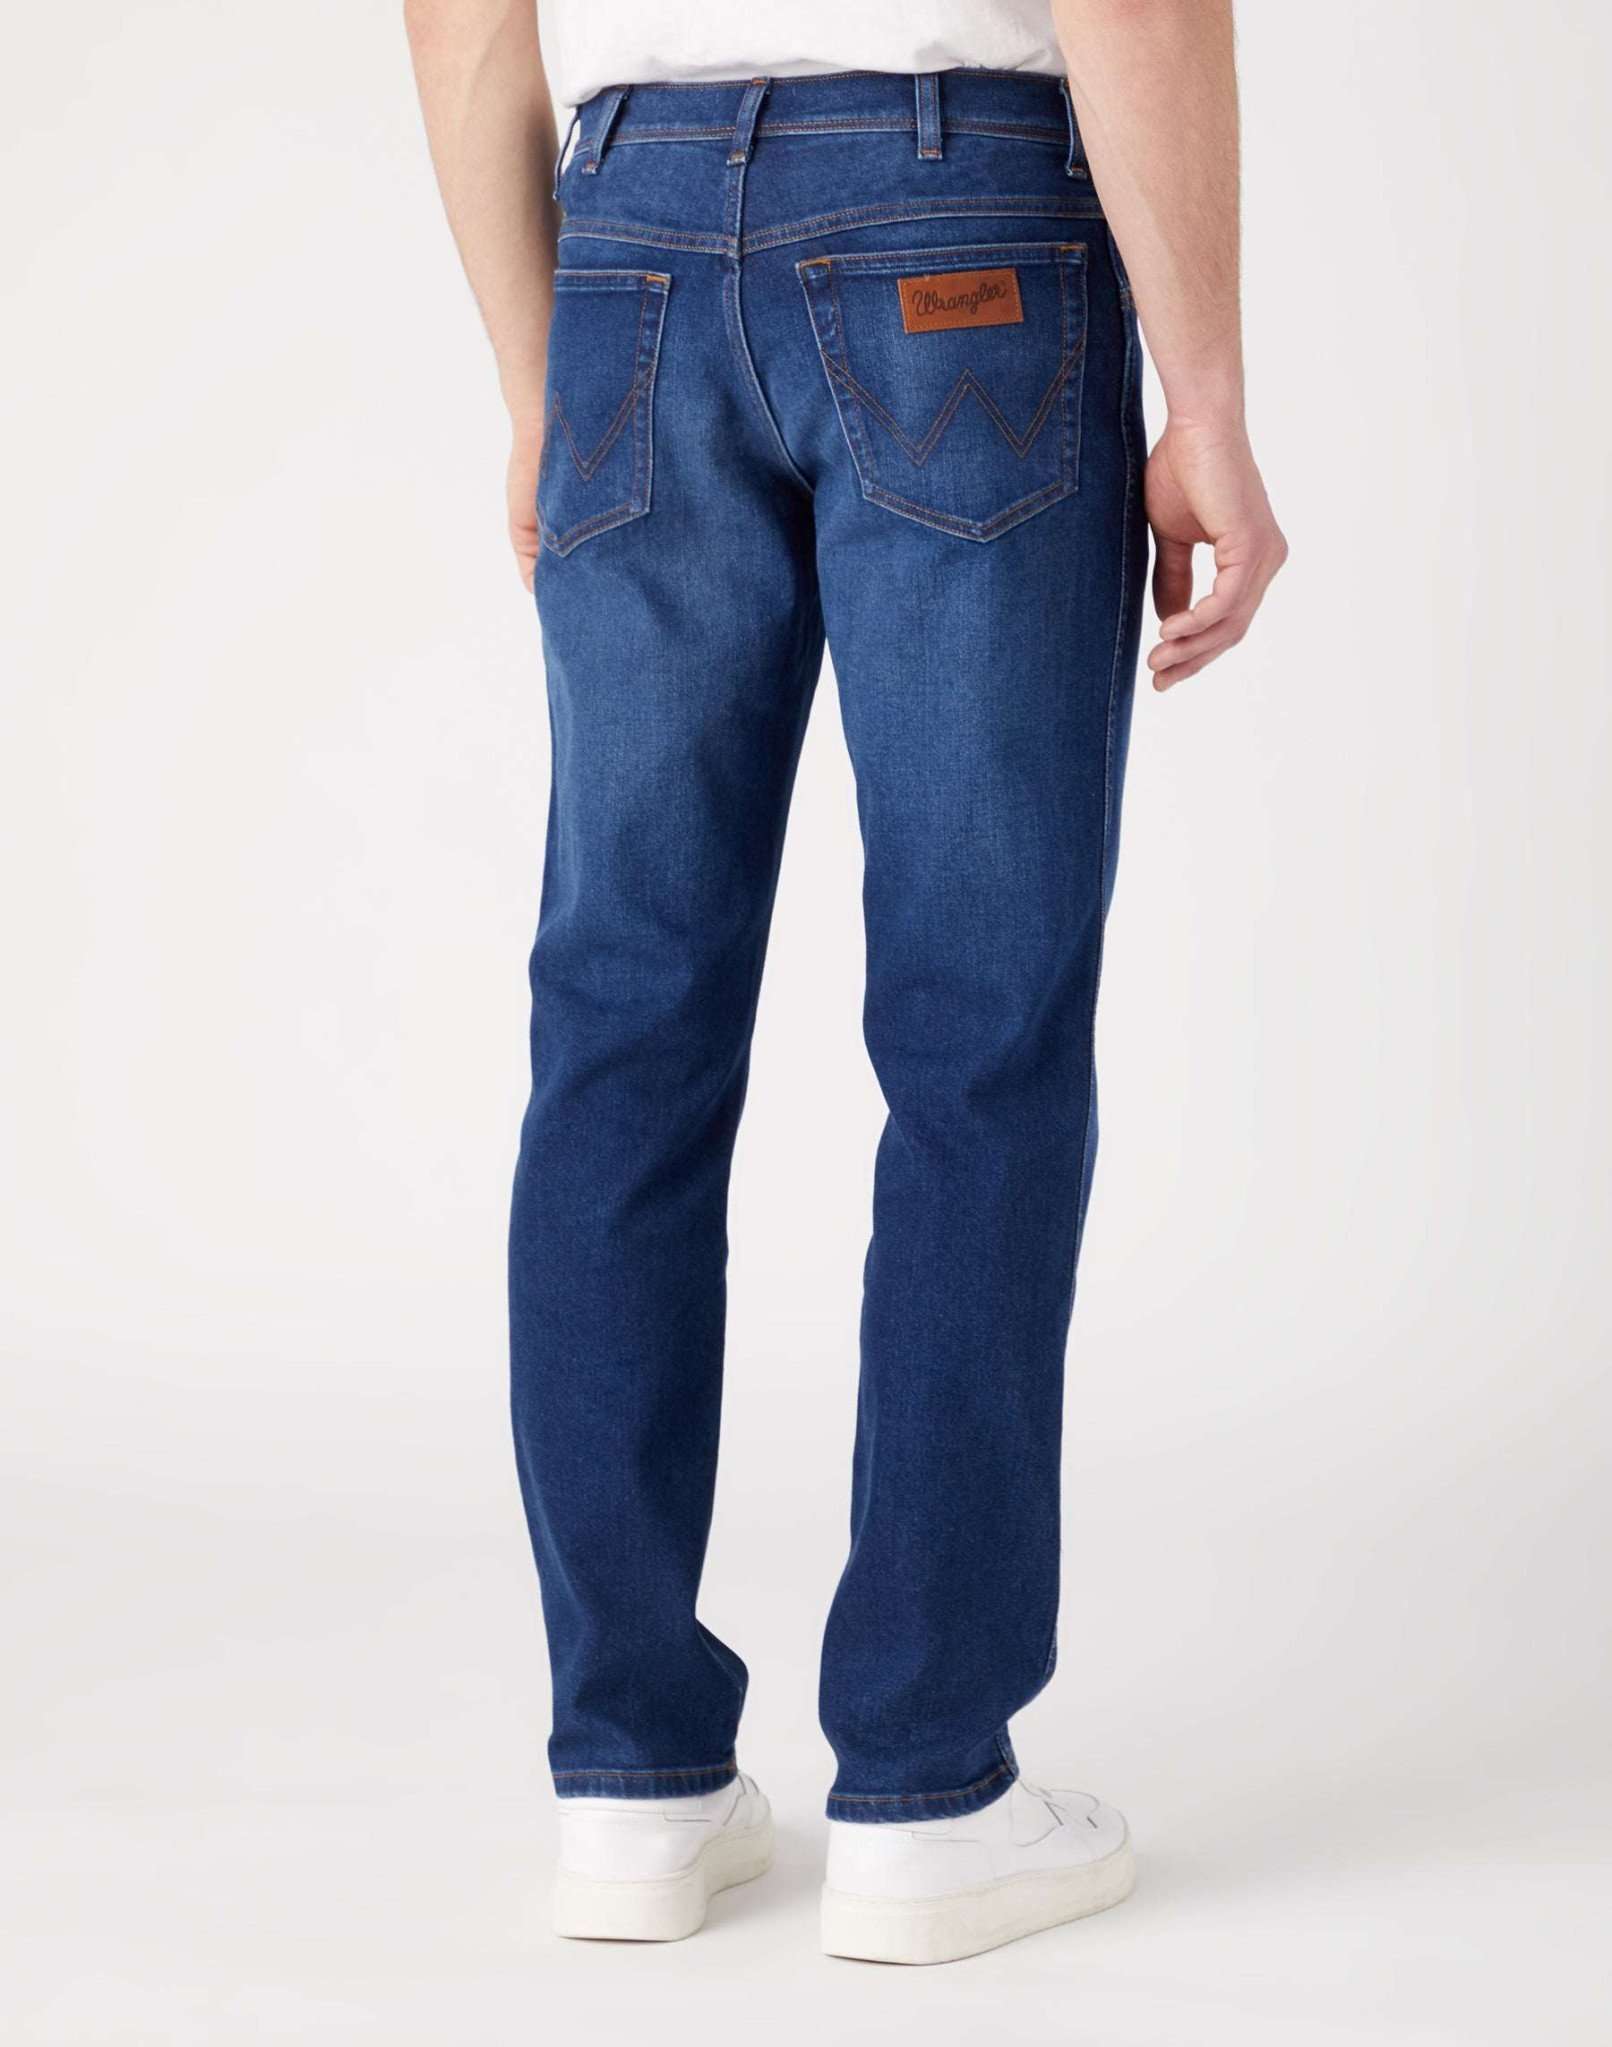 Texas Slim in Star Man Jeans Wrangler   